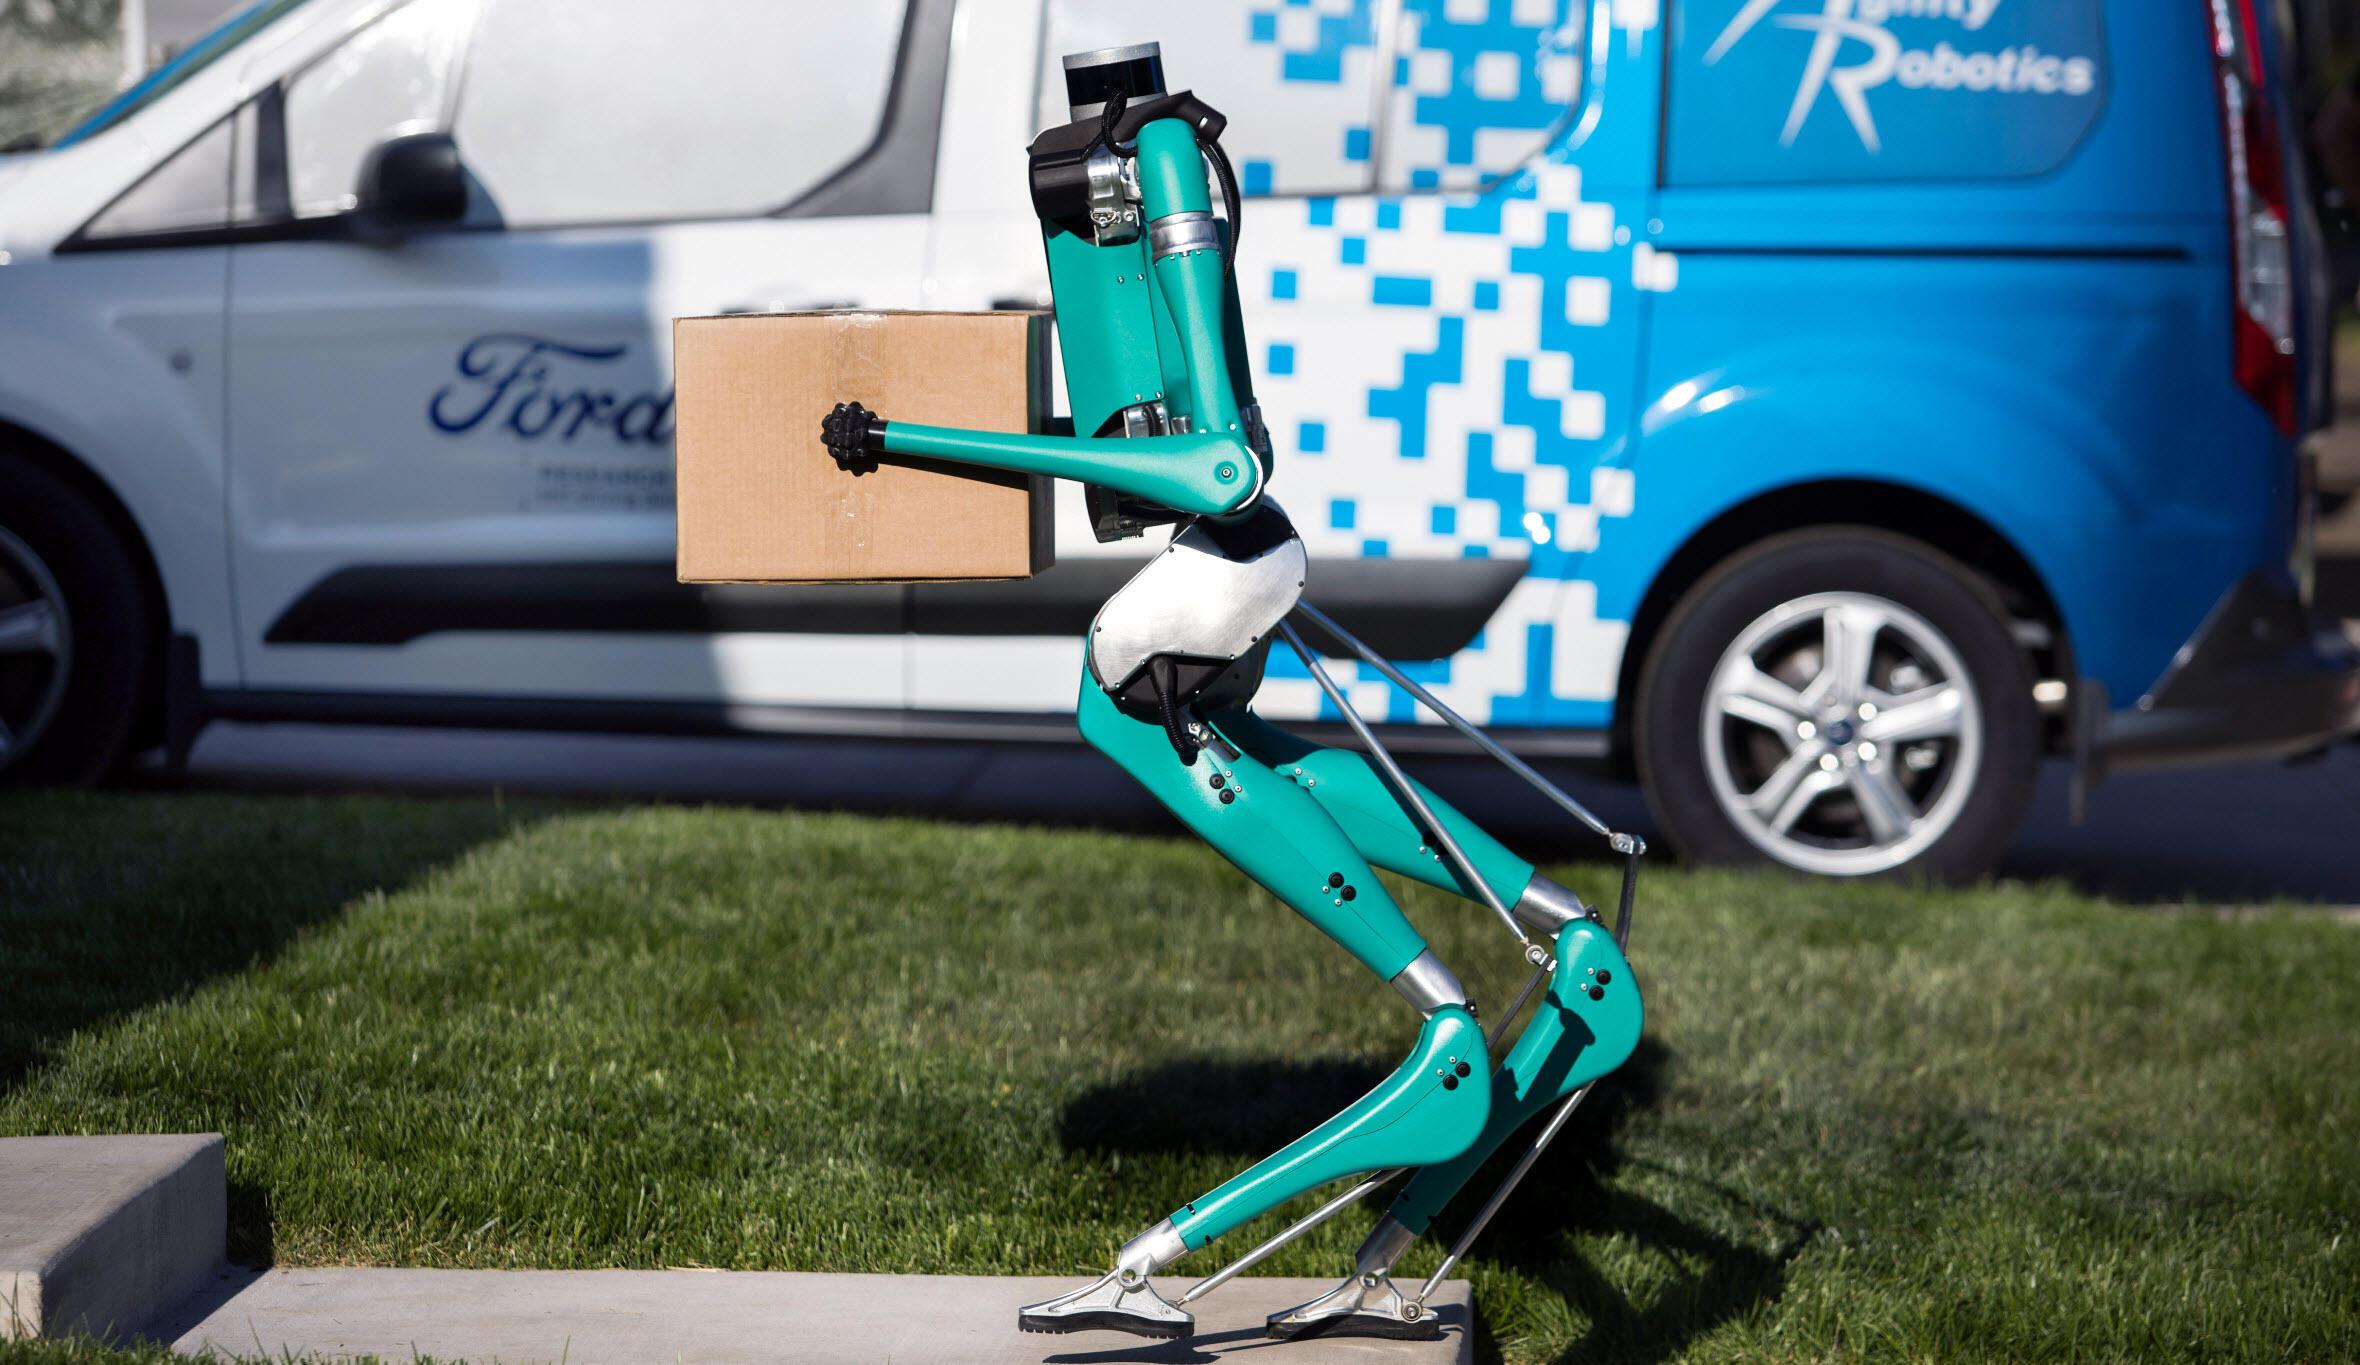 Ford'un Digit isimli robotu insan gibi görünüp insan gibi yürüyor